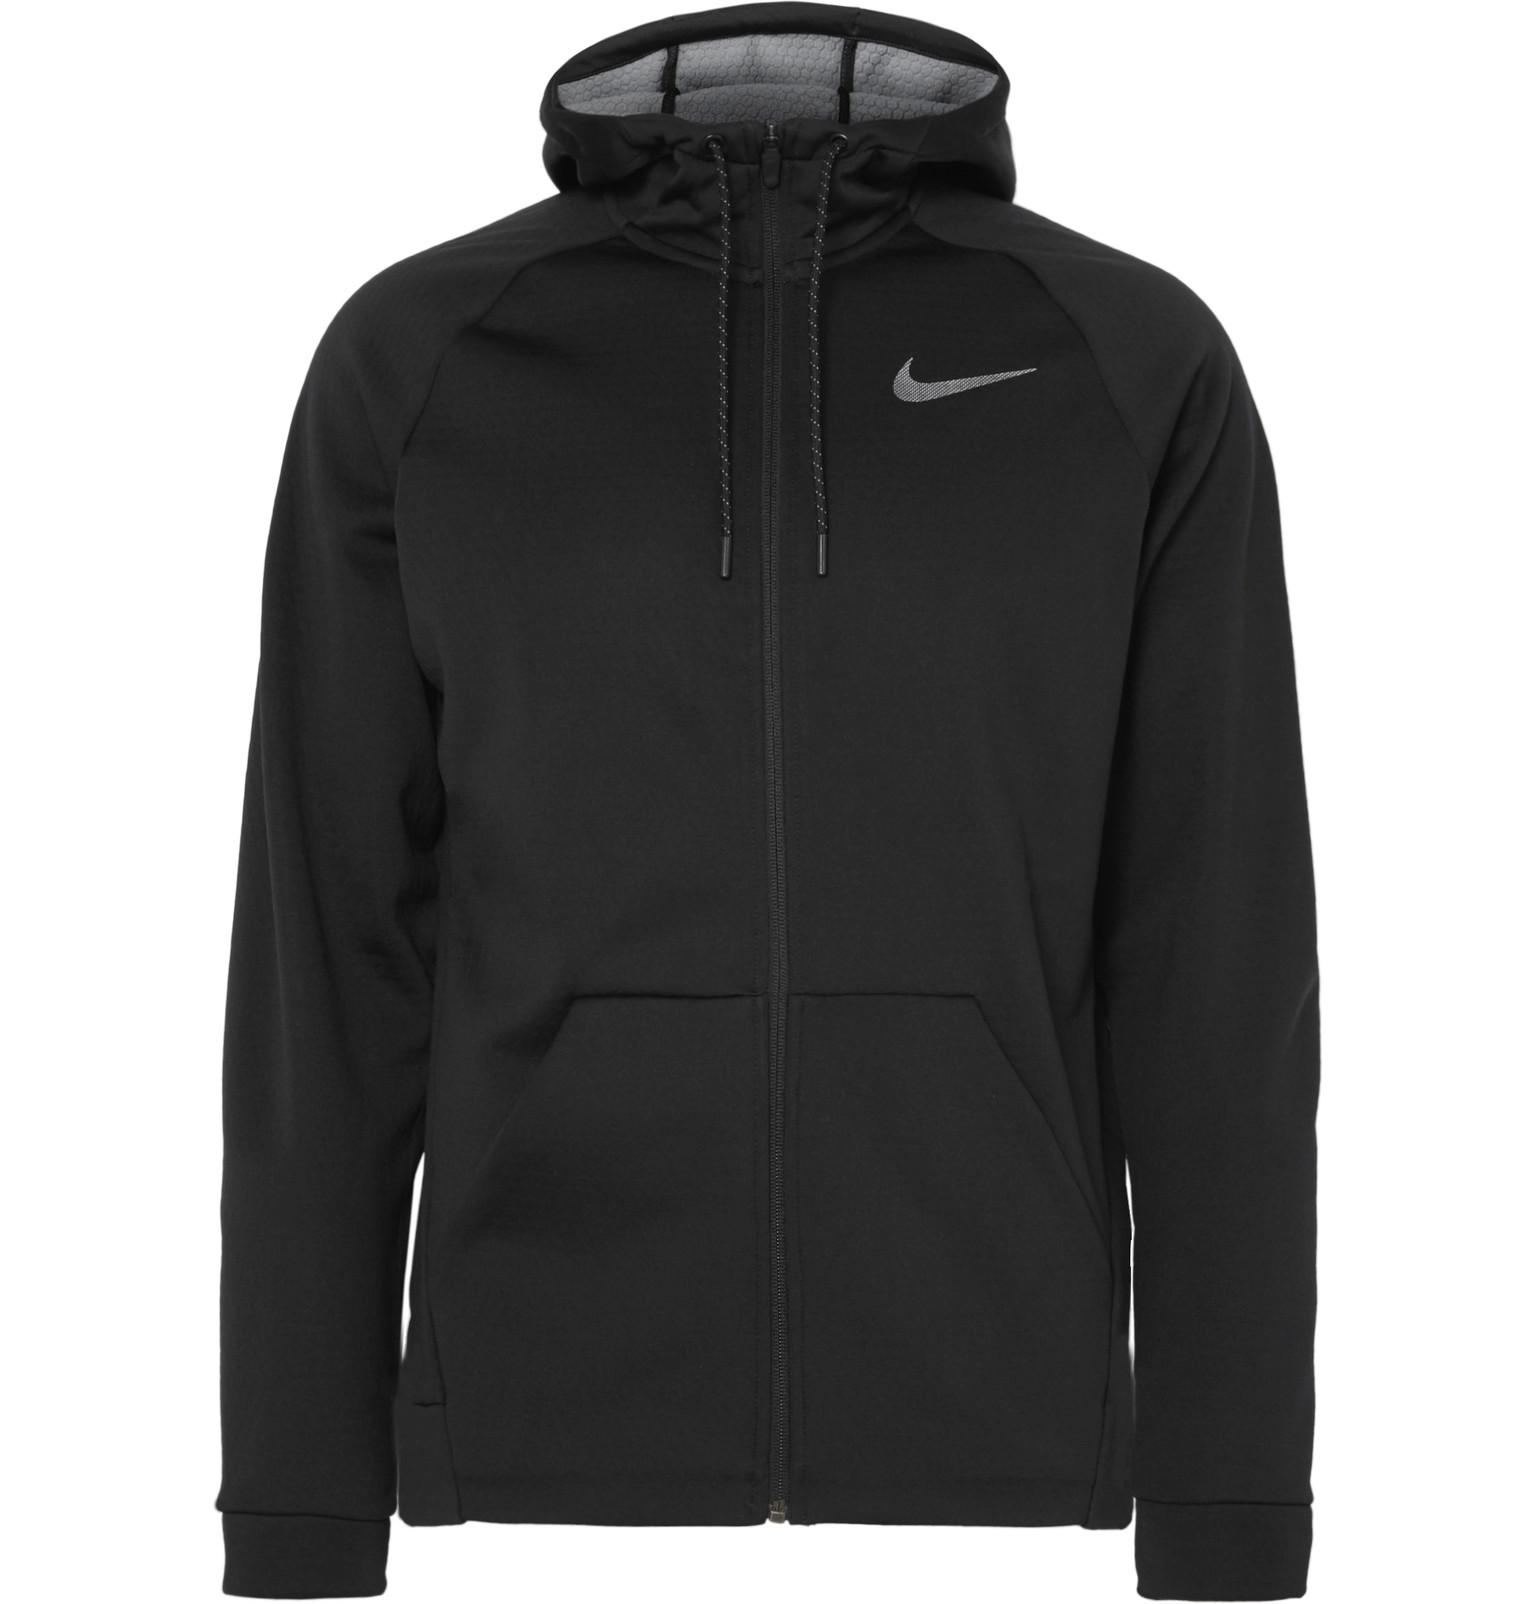 Nike Fleece Therma Sphere Dri-fit Zip-up Hoodie in Black for Men - Lyst